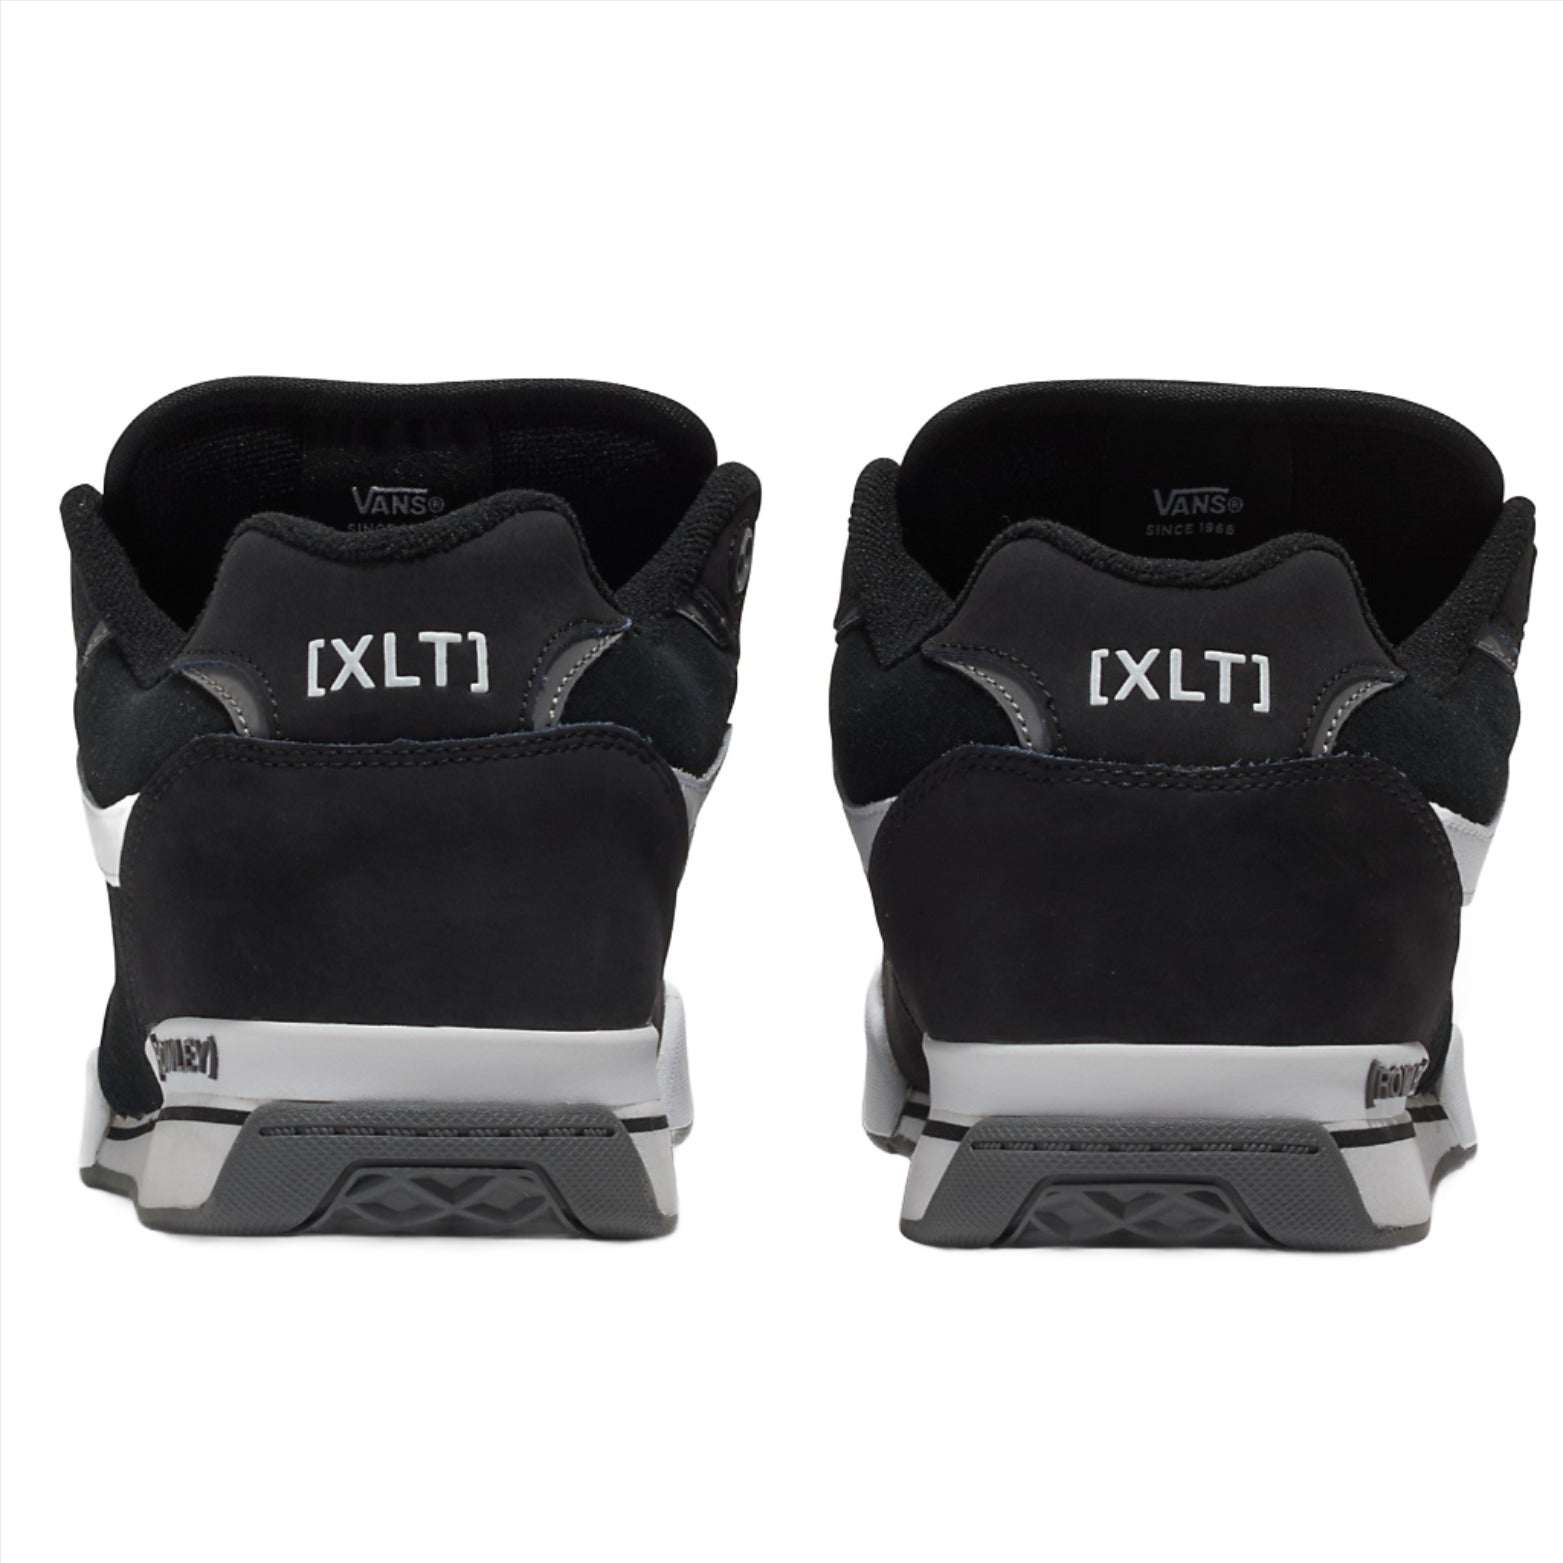 Vans Rowley XLT Skateboard Shoe - Black/White